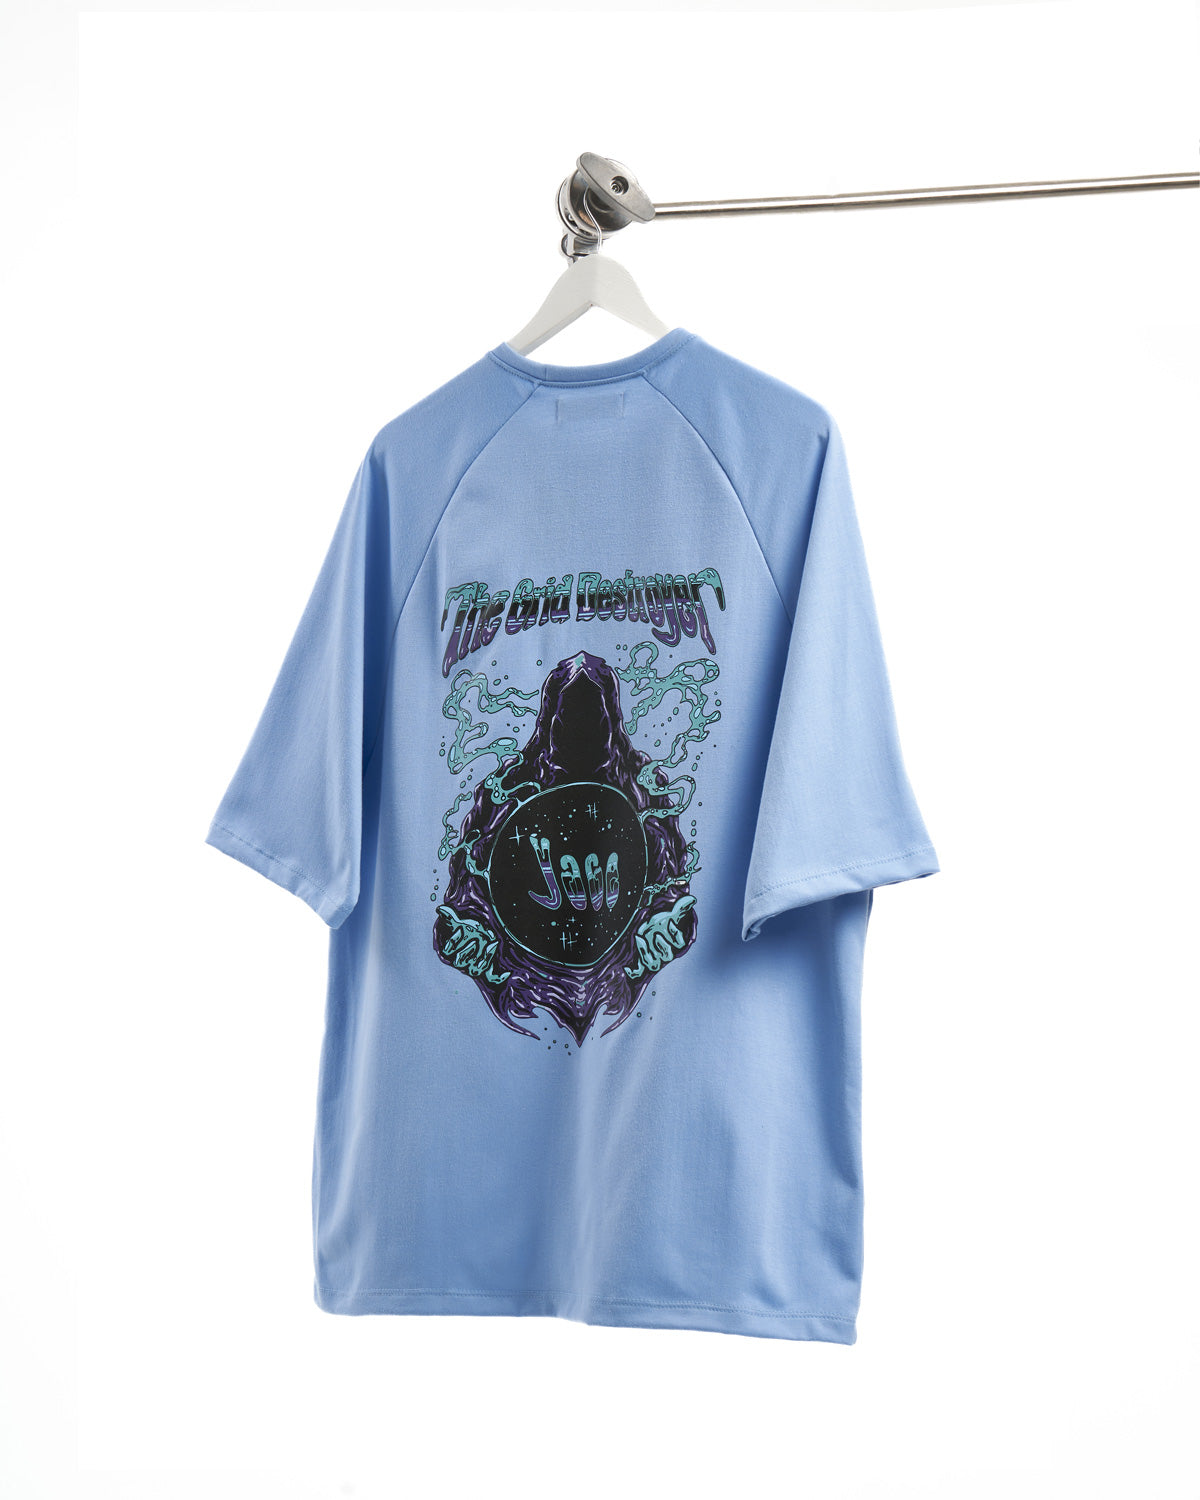 Oversized Medusa T-shirt